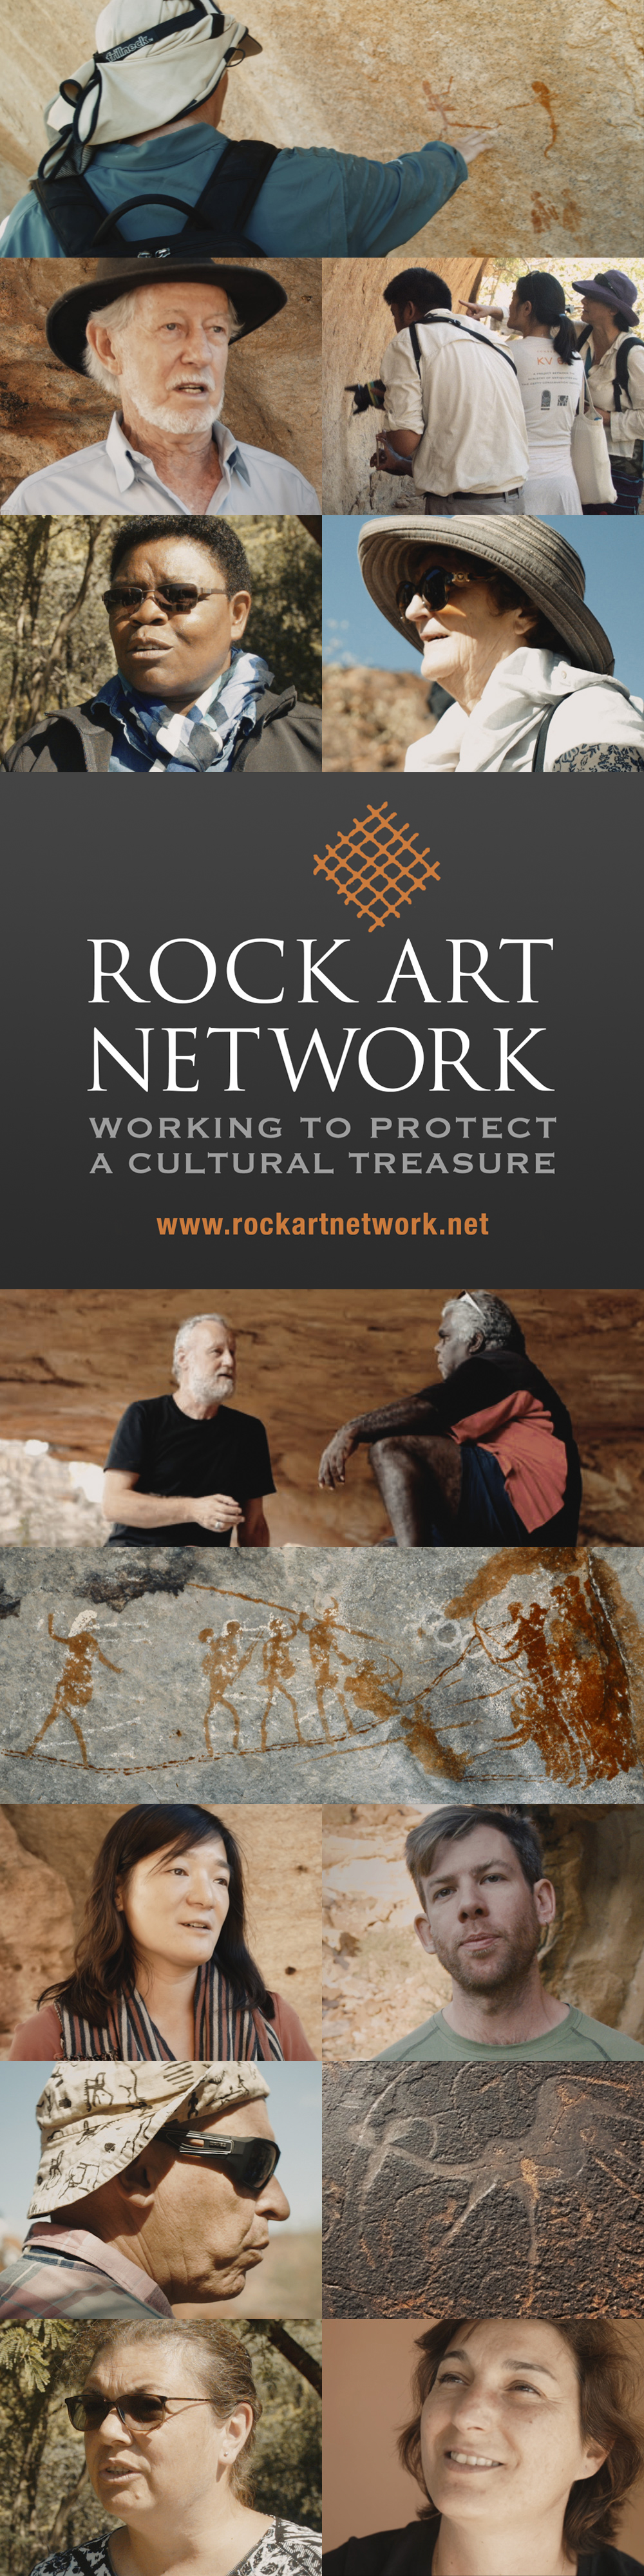 Bradshaw Foundation Rock Art Network Getty Conservation Institute